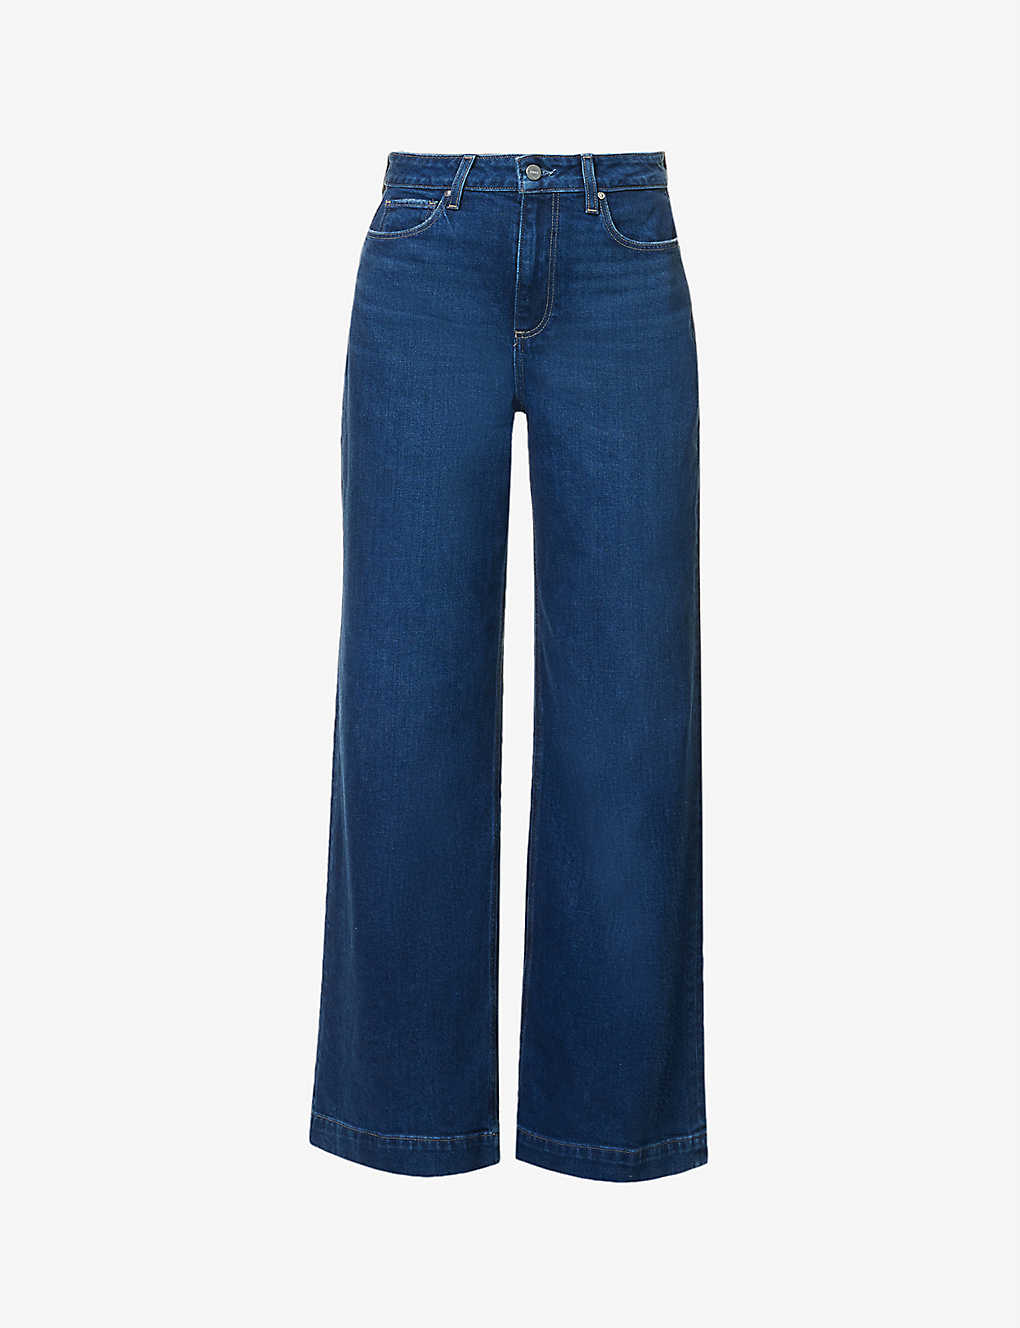 Wide leg dark blue wash full length jeans